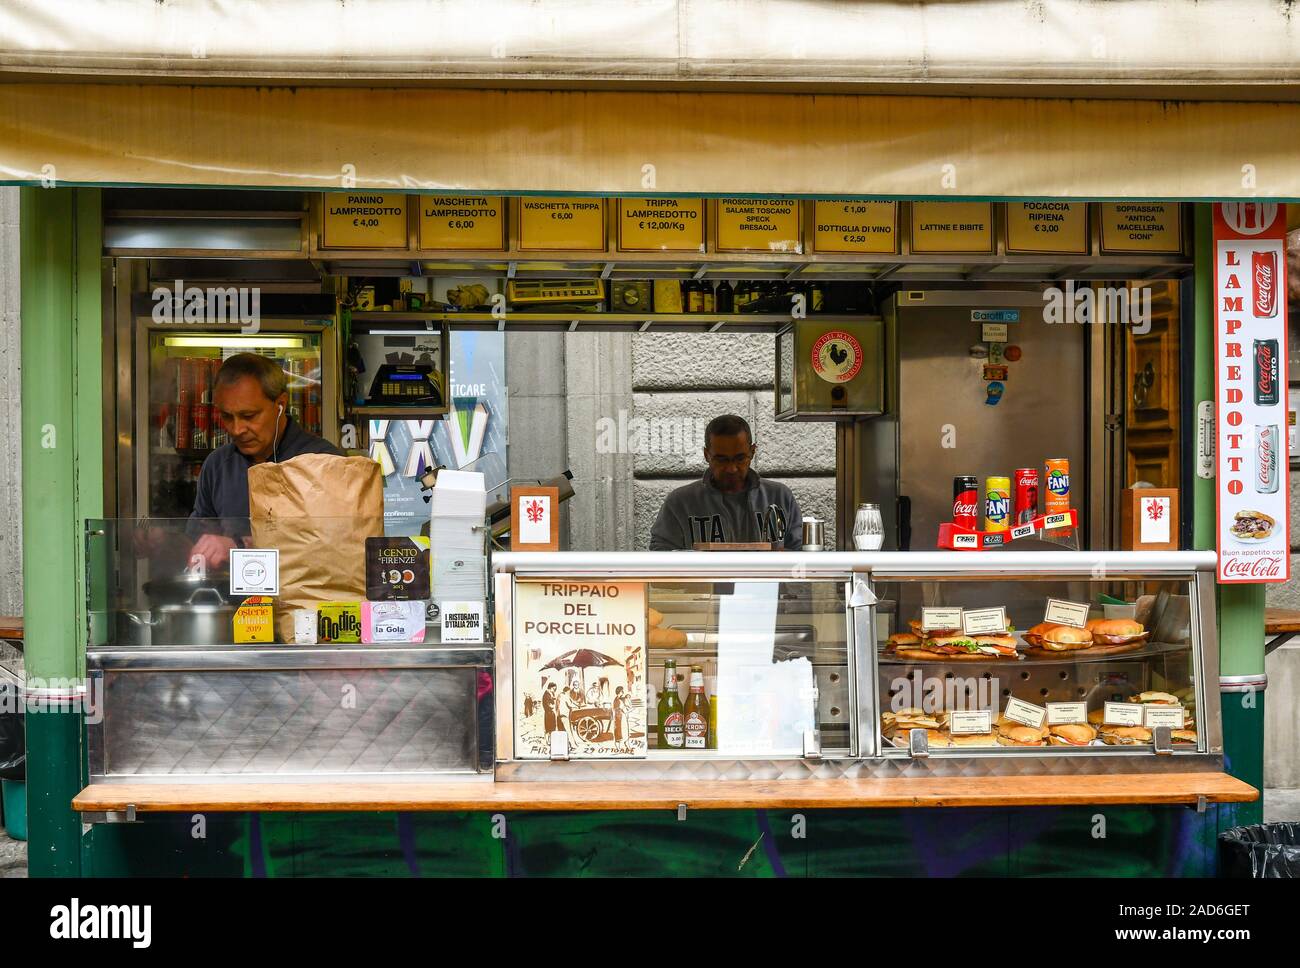 La cuisine hommes lampredotto tripes de sandwichs dans la rue historique 'kiosque alimentaire Trippaio del Porcellino' dans le centre de Florence, Toscane, Italie Banque D'Images